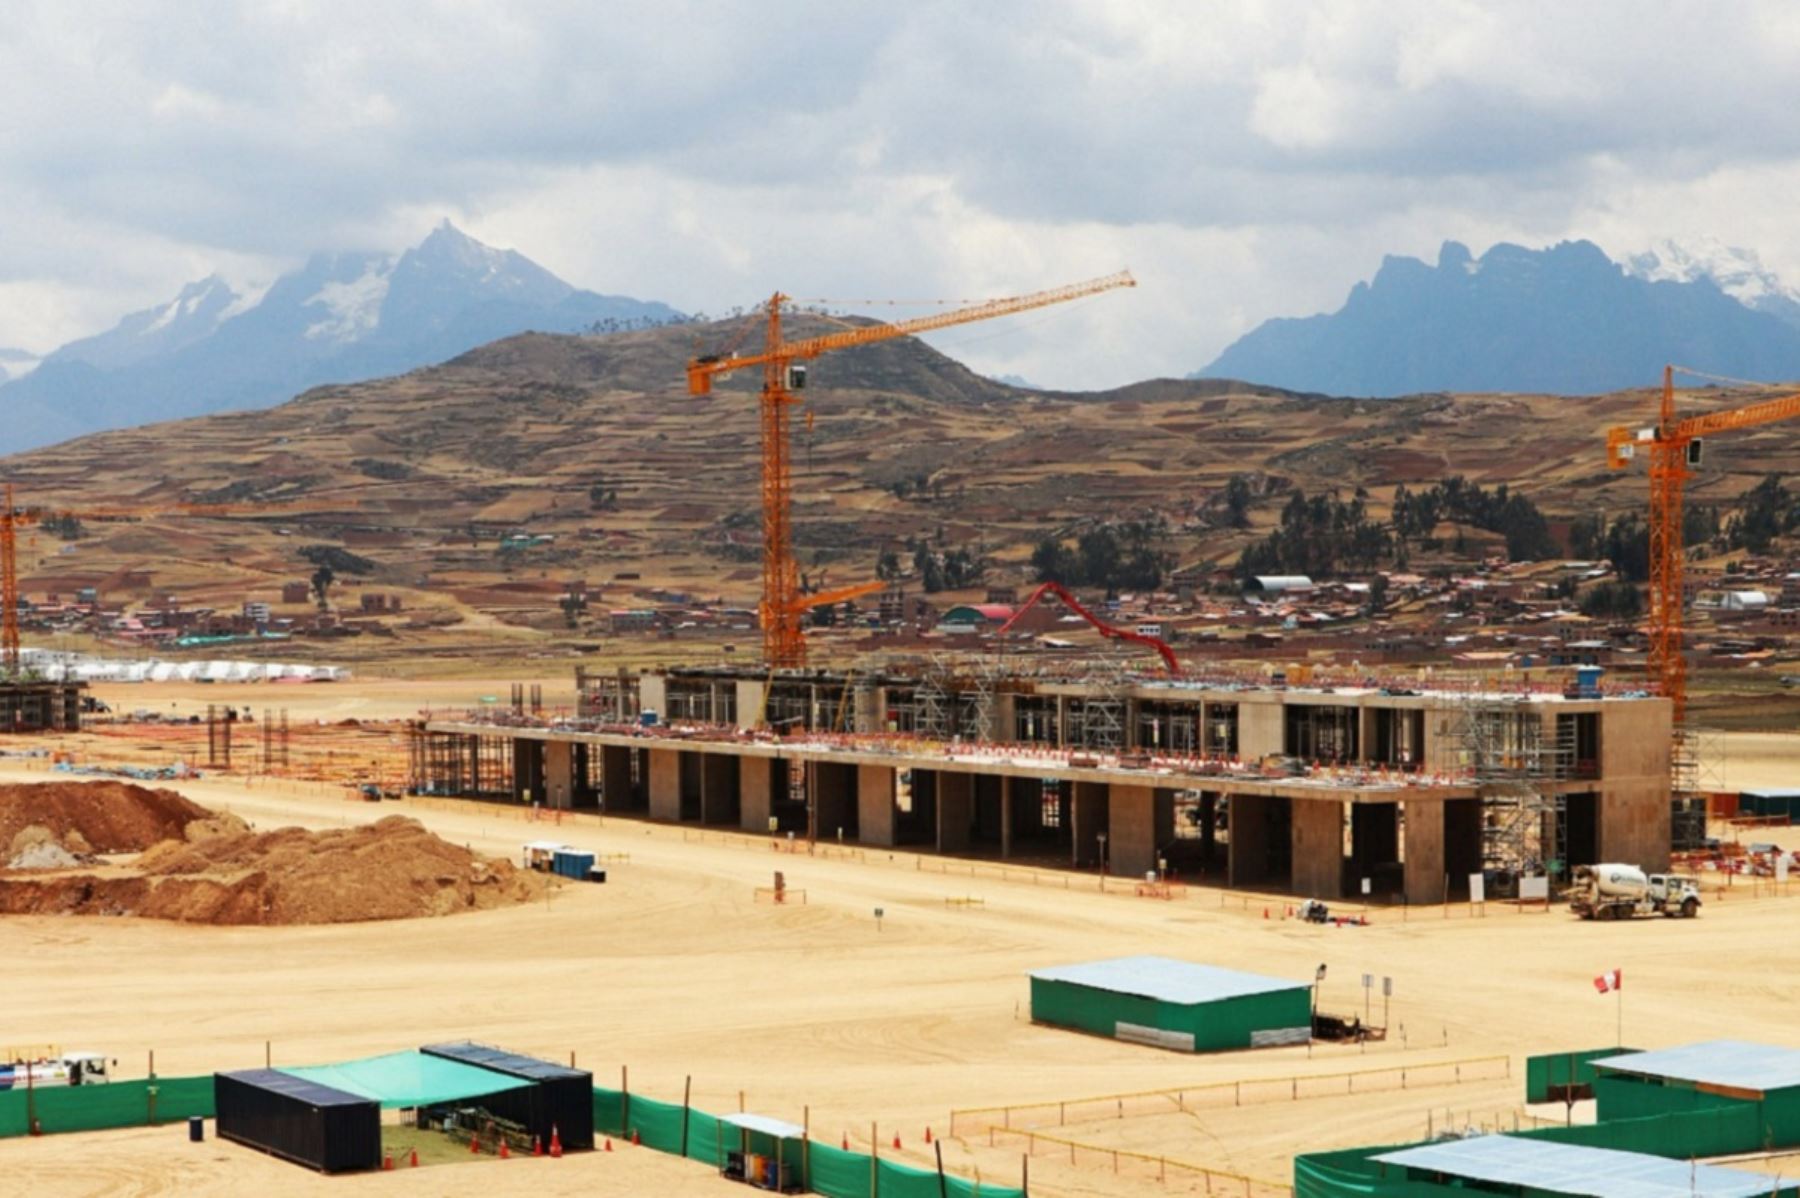 Avanza la construcción del terminal de pasajeros del nuevo Aeropuerto Internacional de Chinchero en el Cusco. Foto: Cortesía.